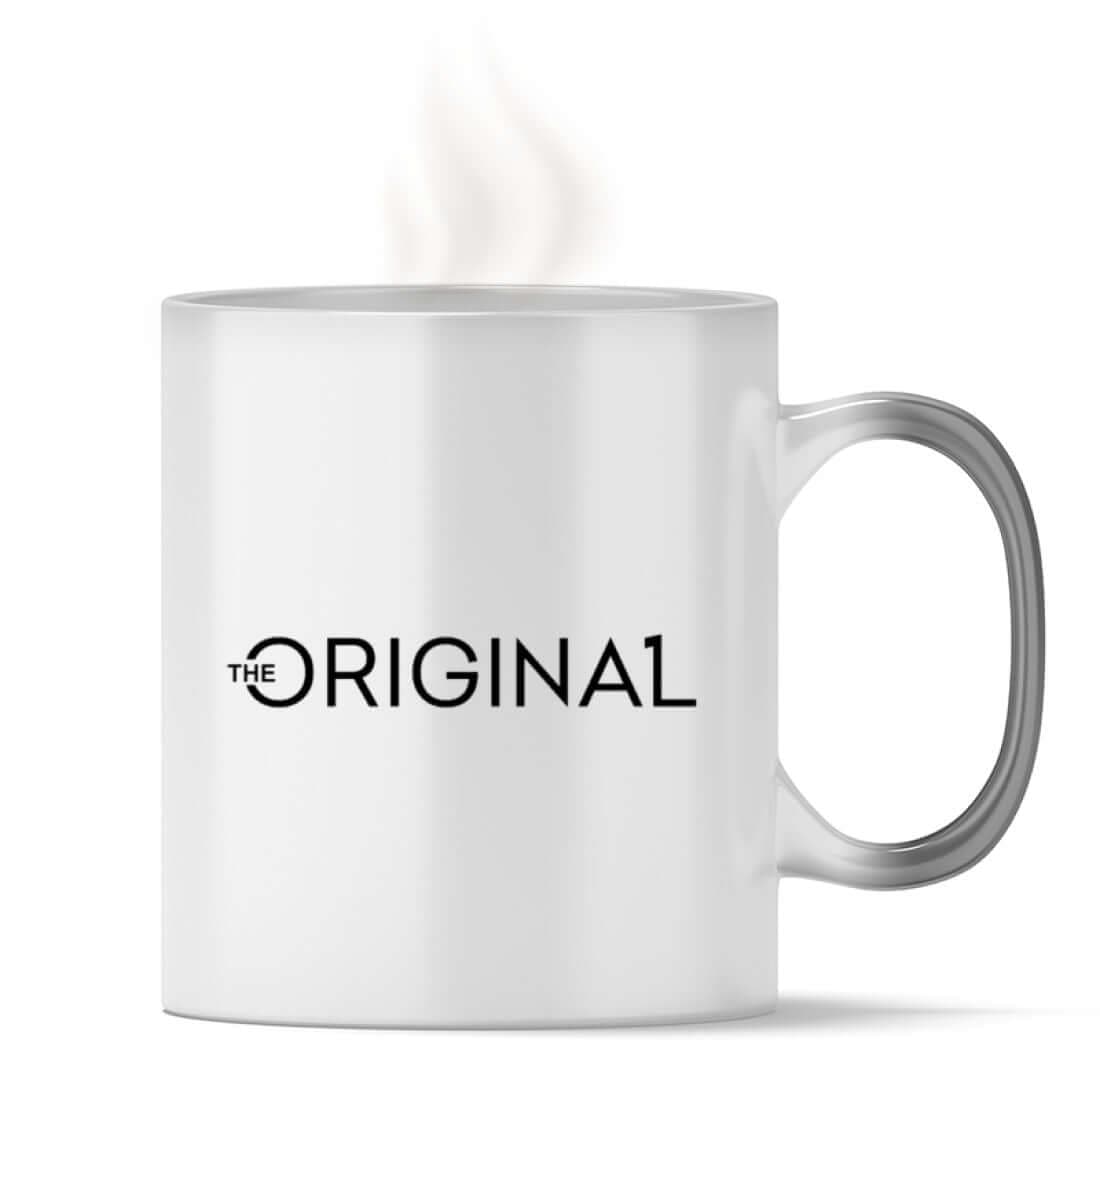 The Original One Coffee Mug | The Original One